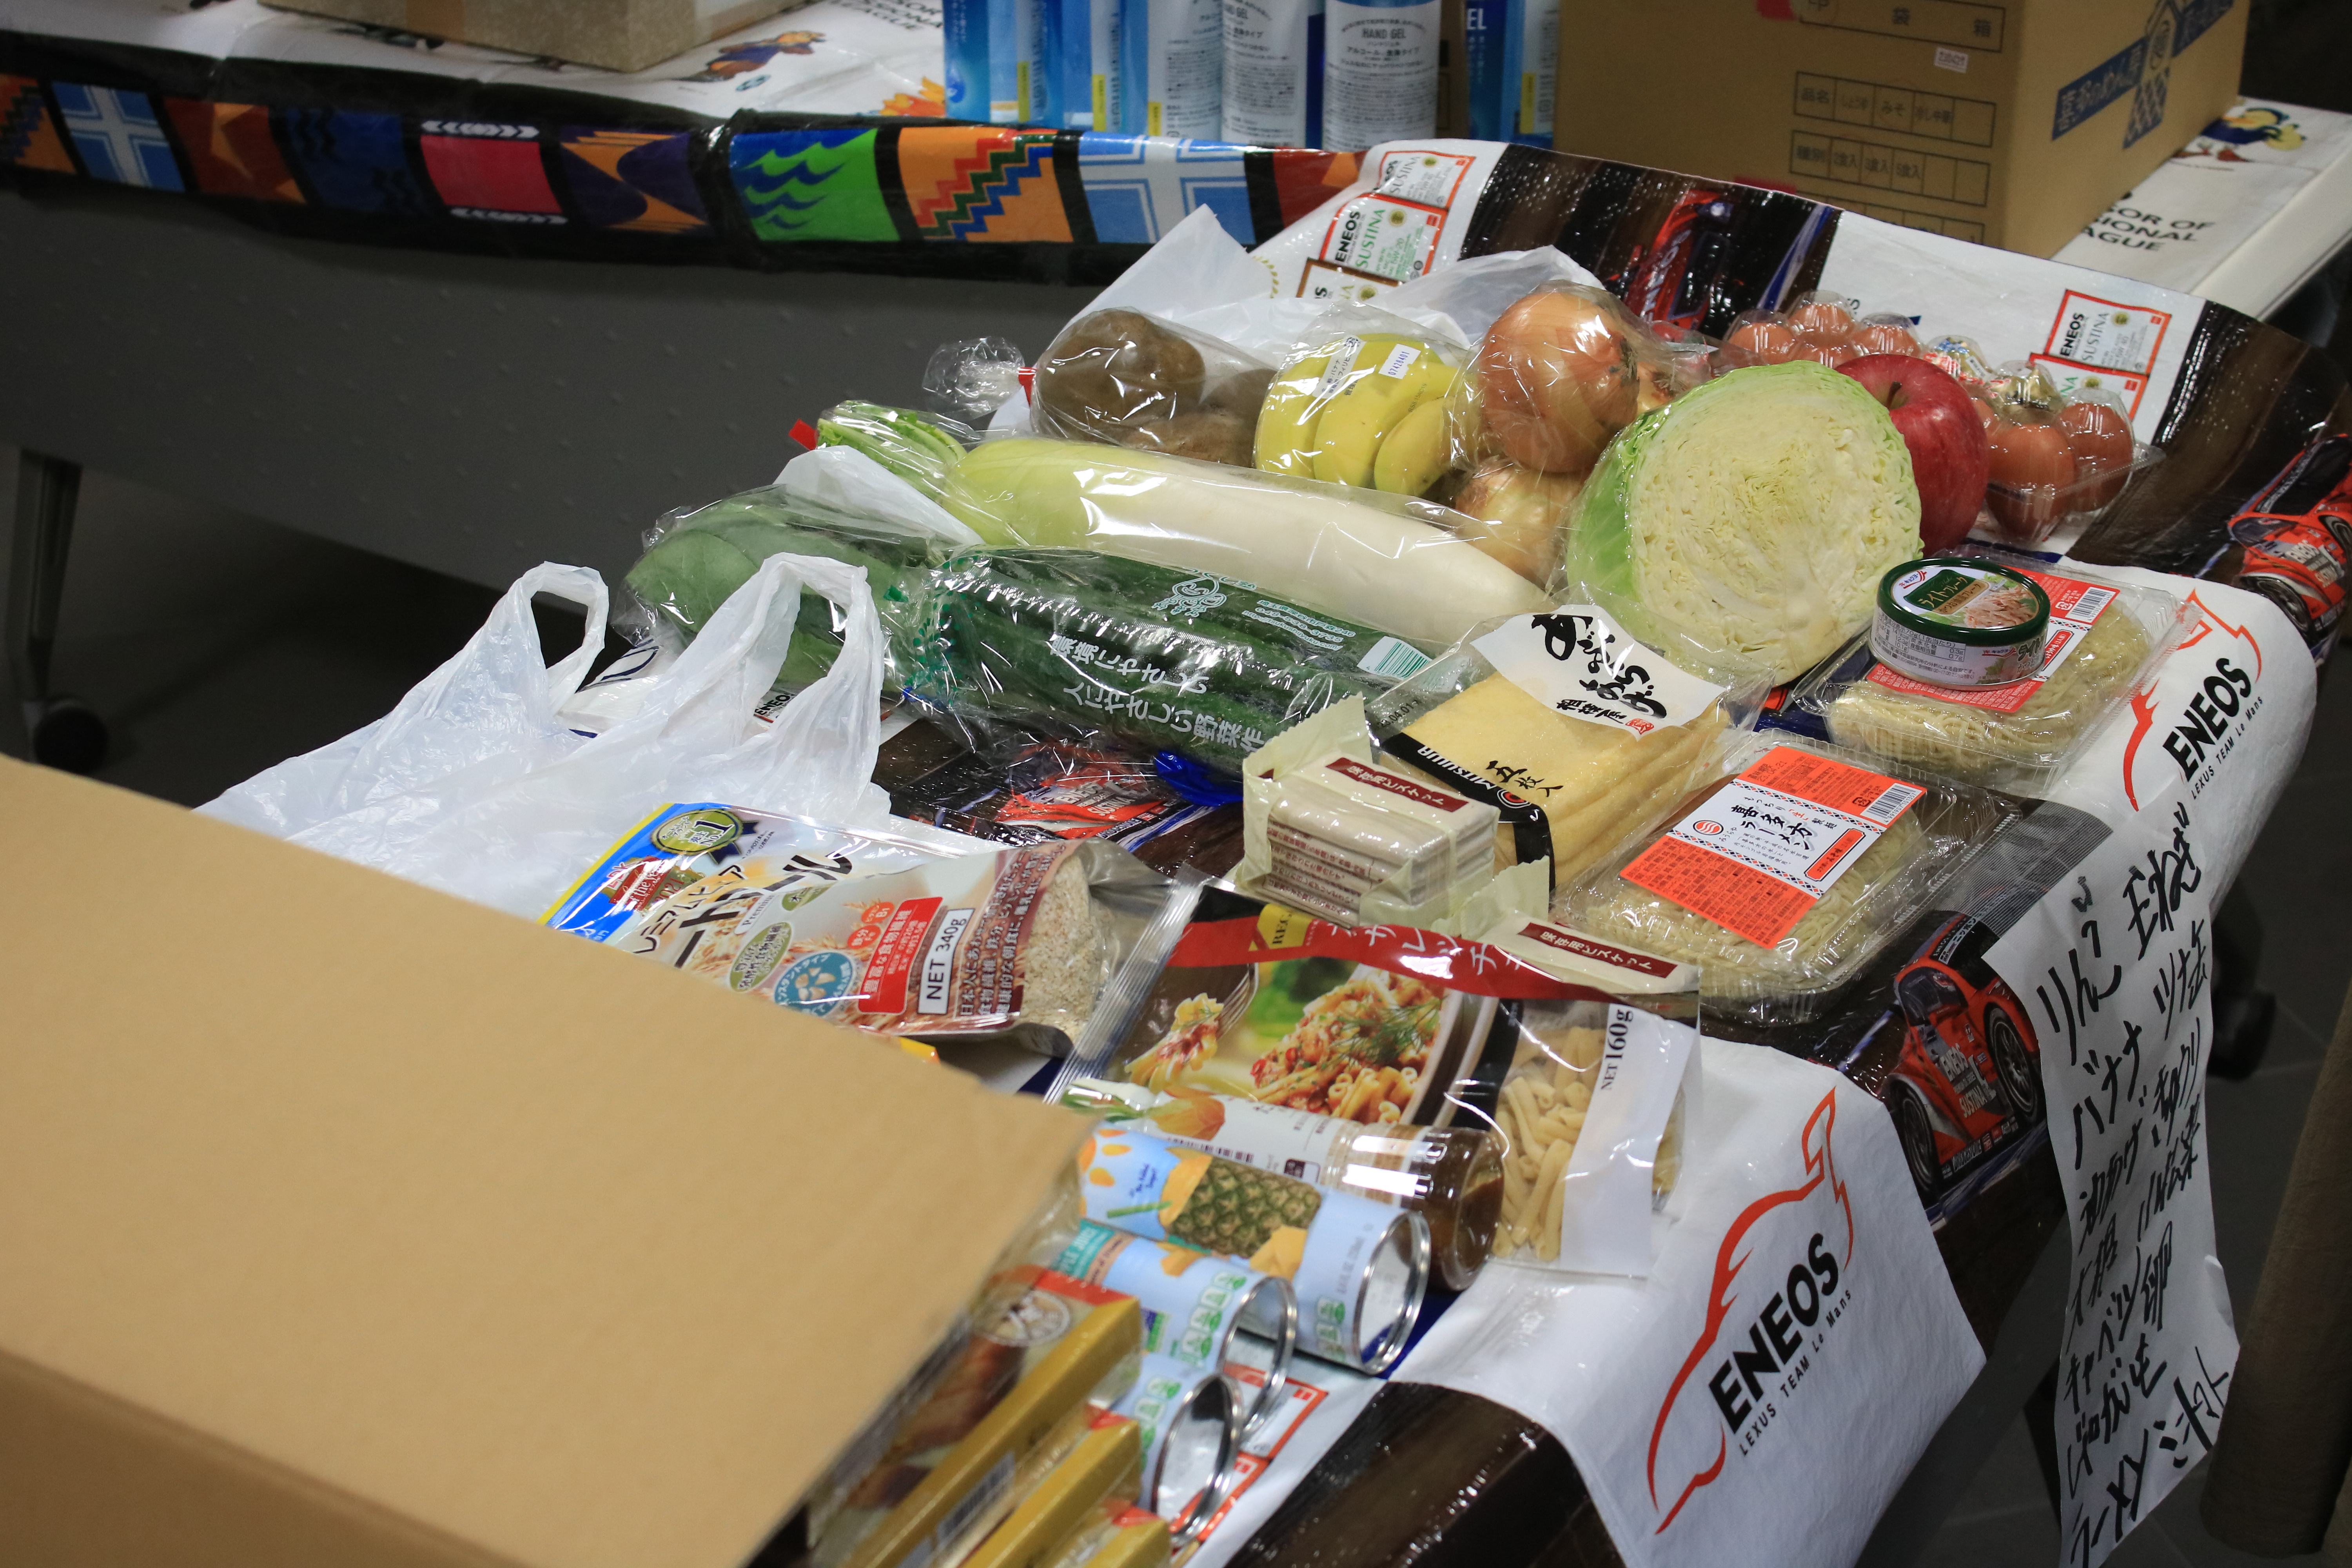 一般社団法人みなと繋がるネットワークや後援による生活困窮者のための食料・物資の配布会場の写真